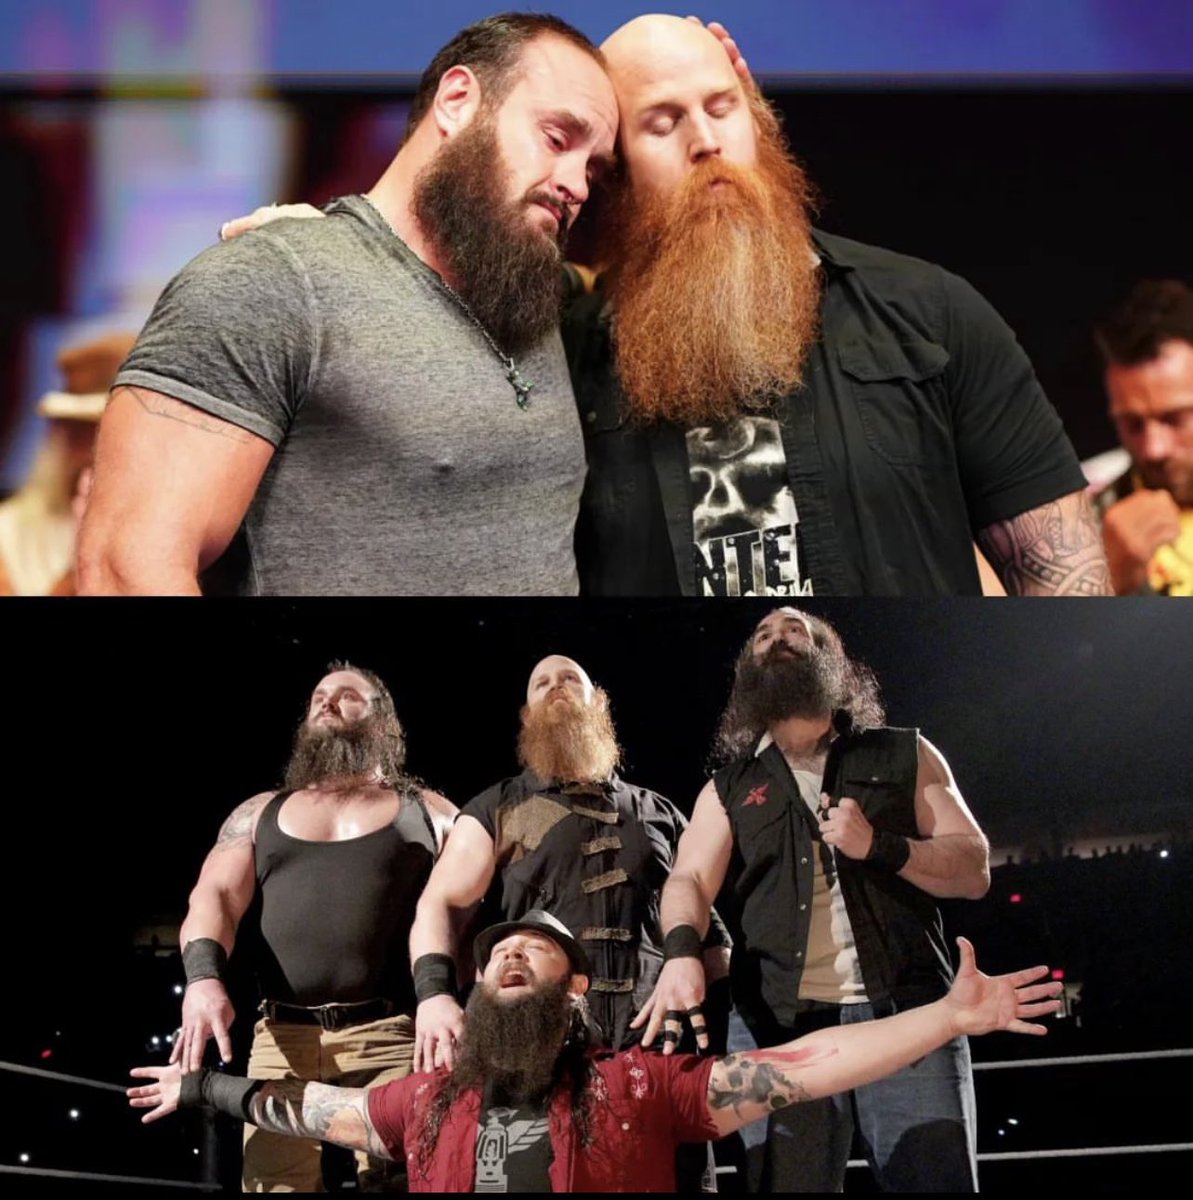 #BrayWyatt #WyattFamily #Wyatt #LukeHarper #BraunStrowman #ErickRowan #WWE #RIPBrayWyatt